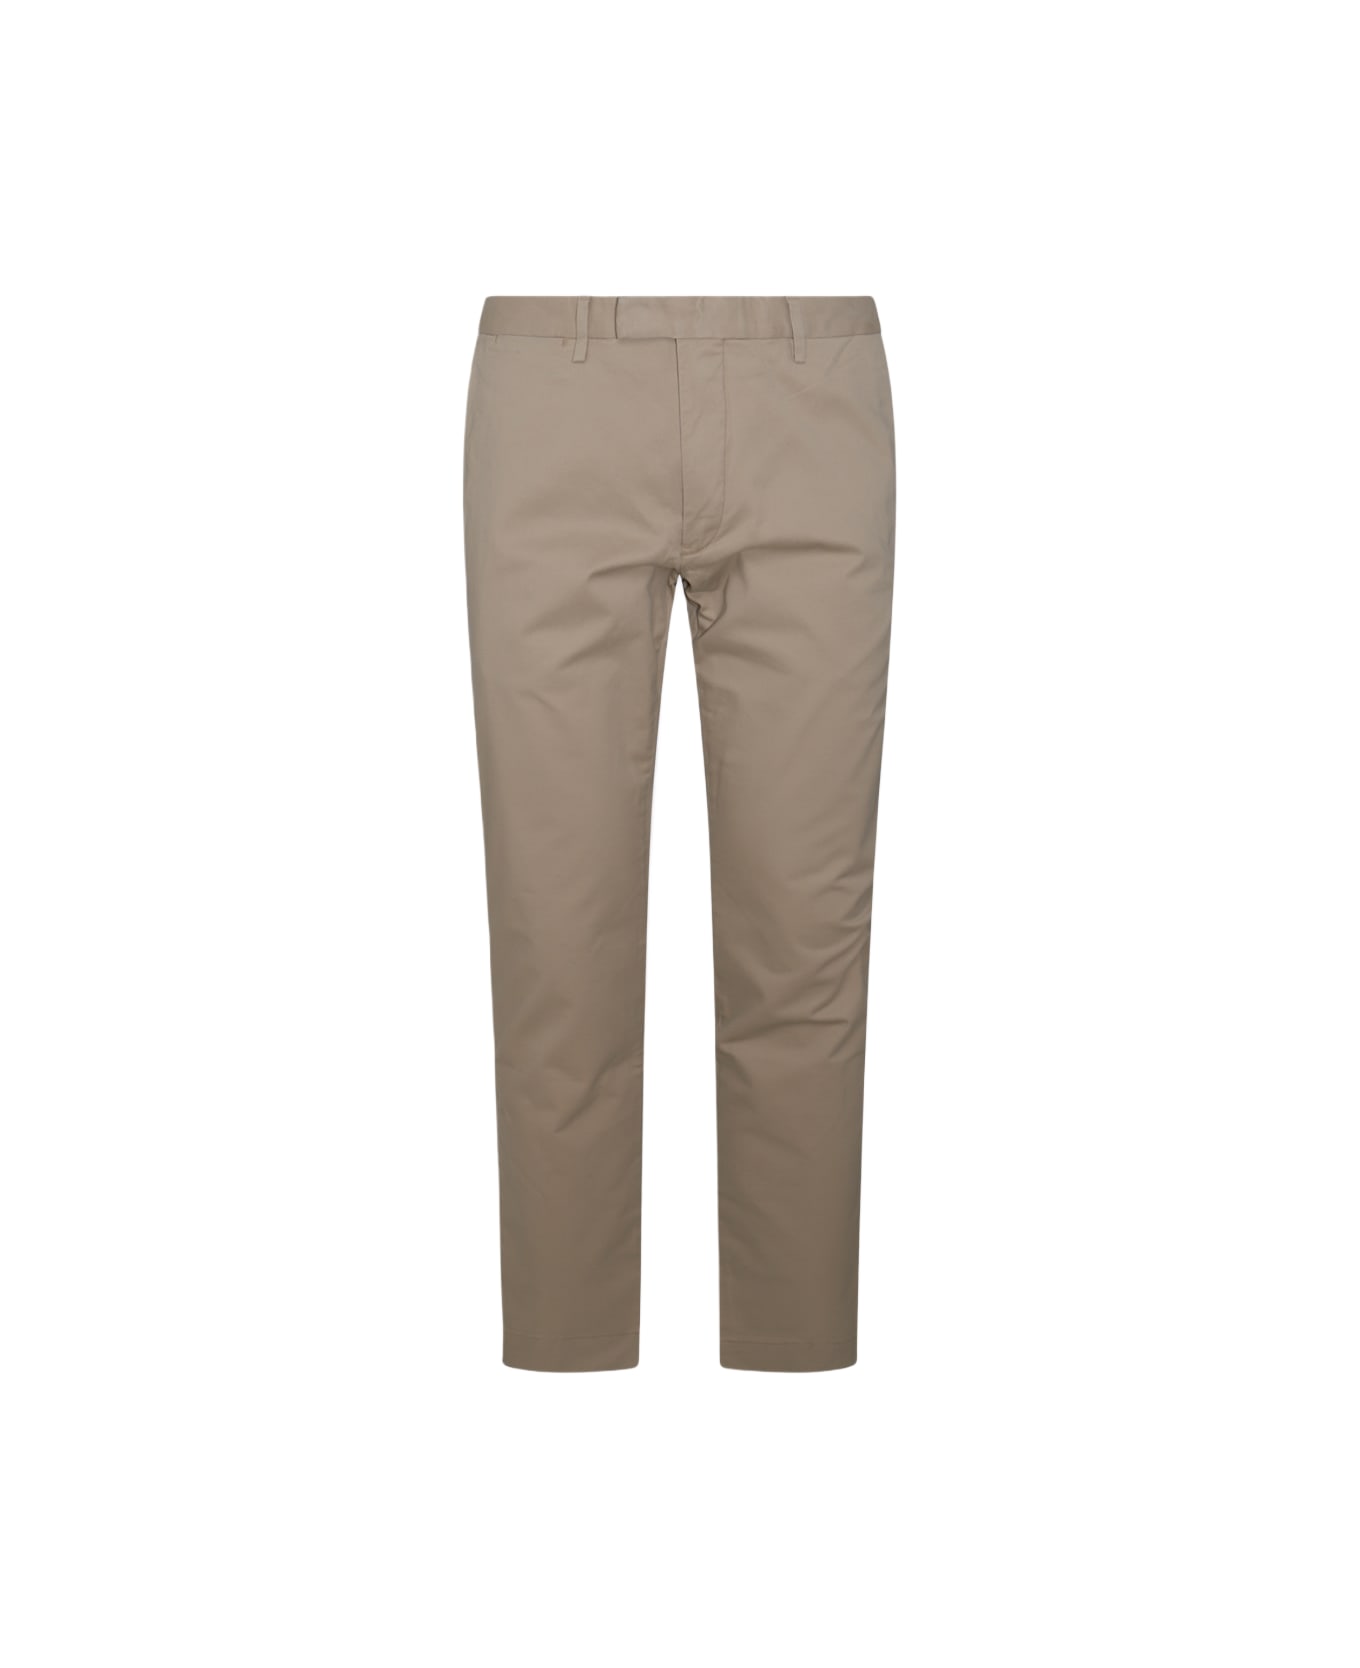 Polo Ralph Lauren Beige Cotton Pants - CLASSIC KHAKI